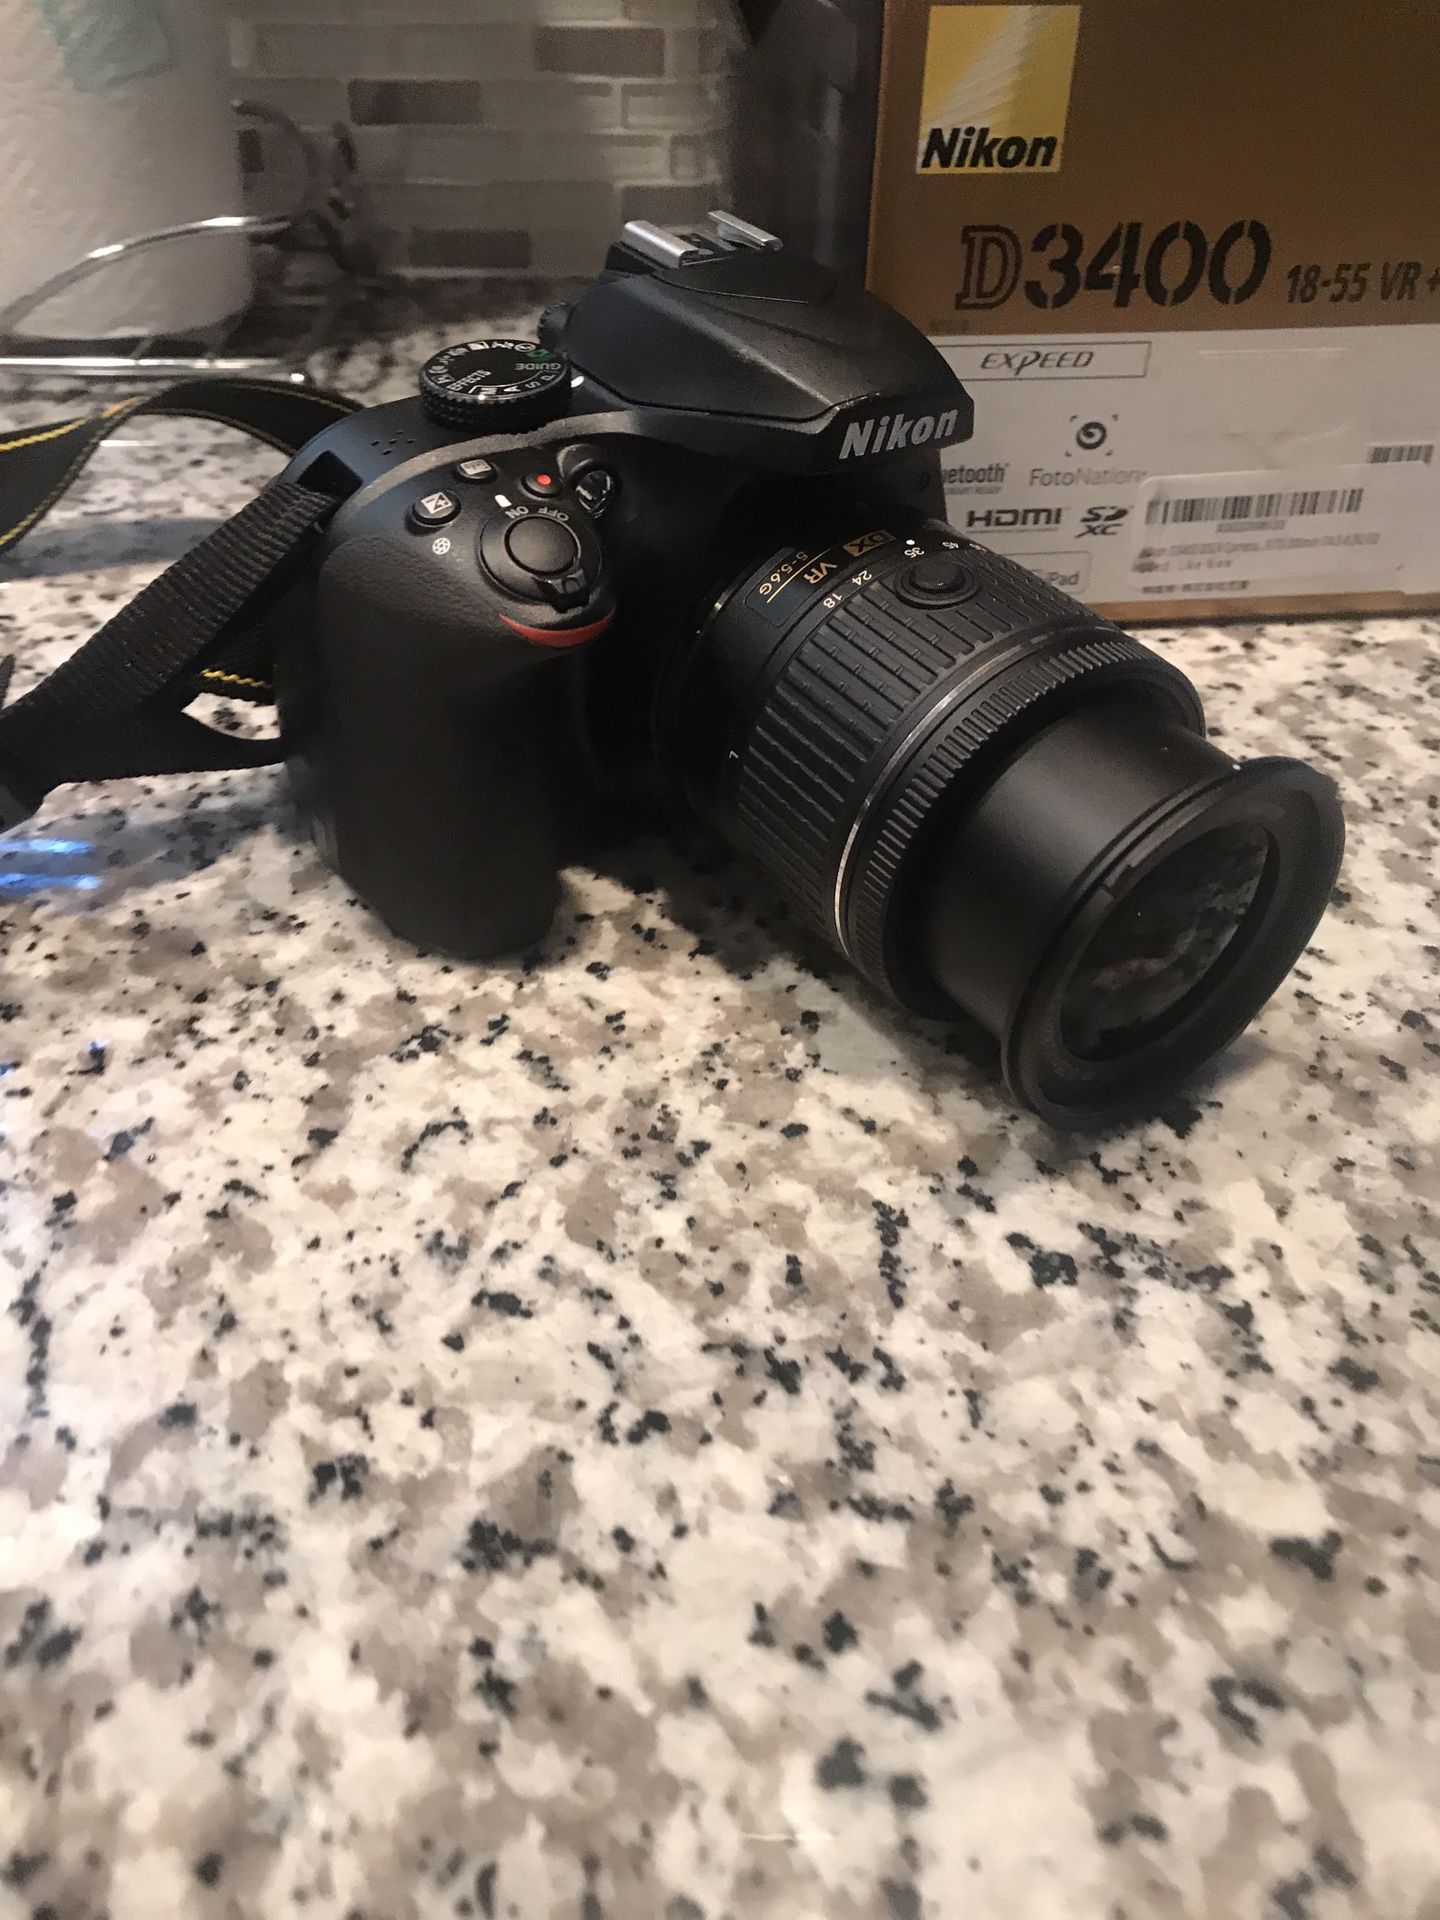 D3400 Nikon Camera